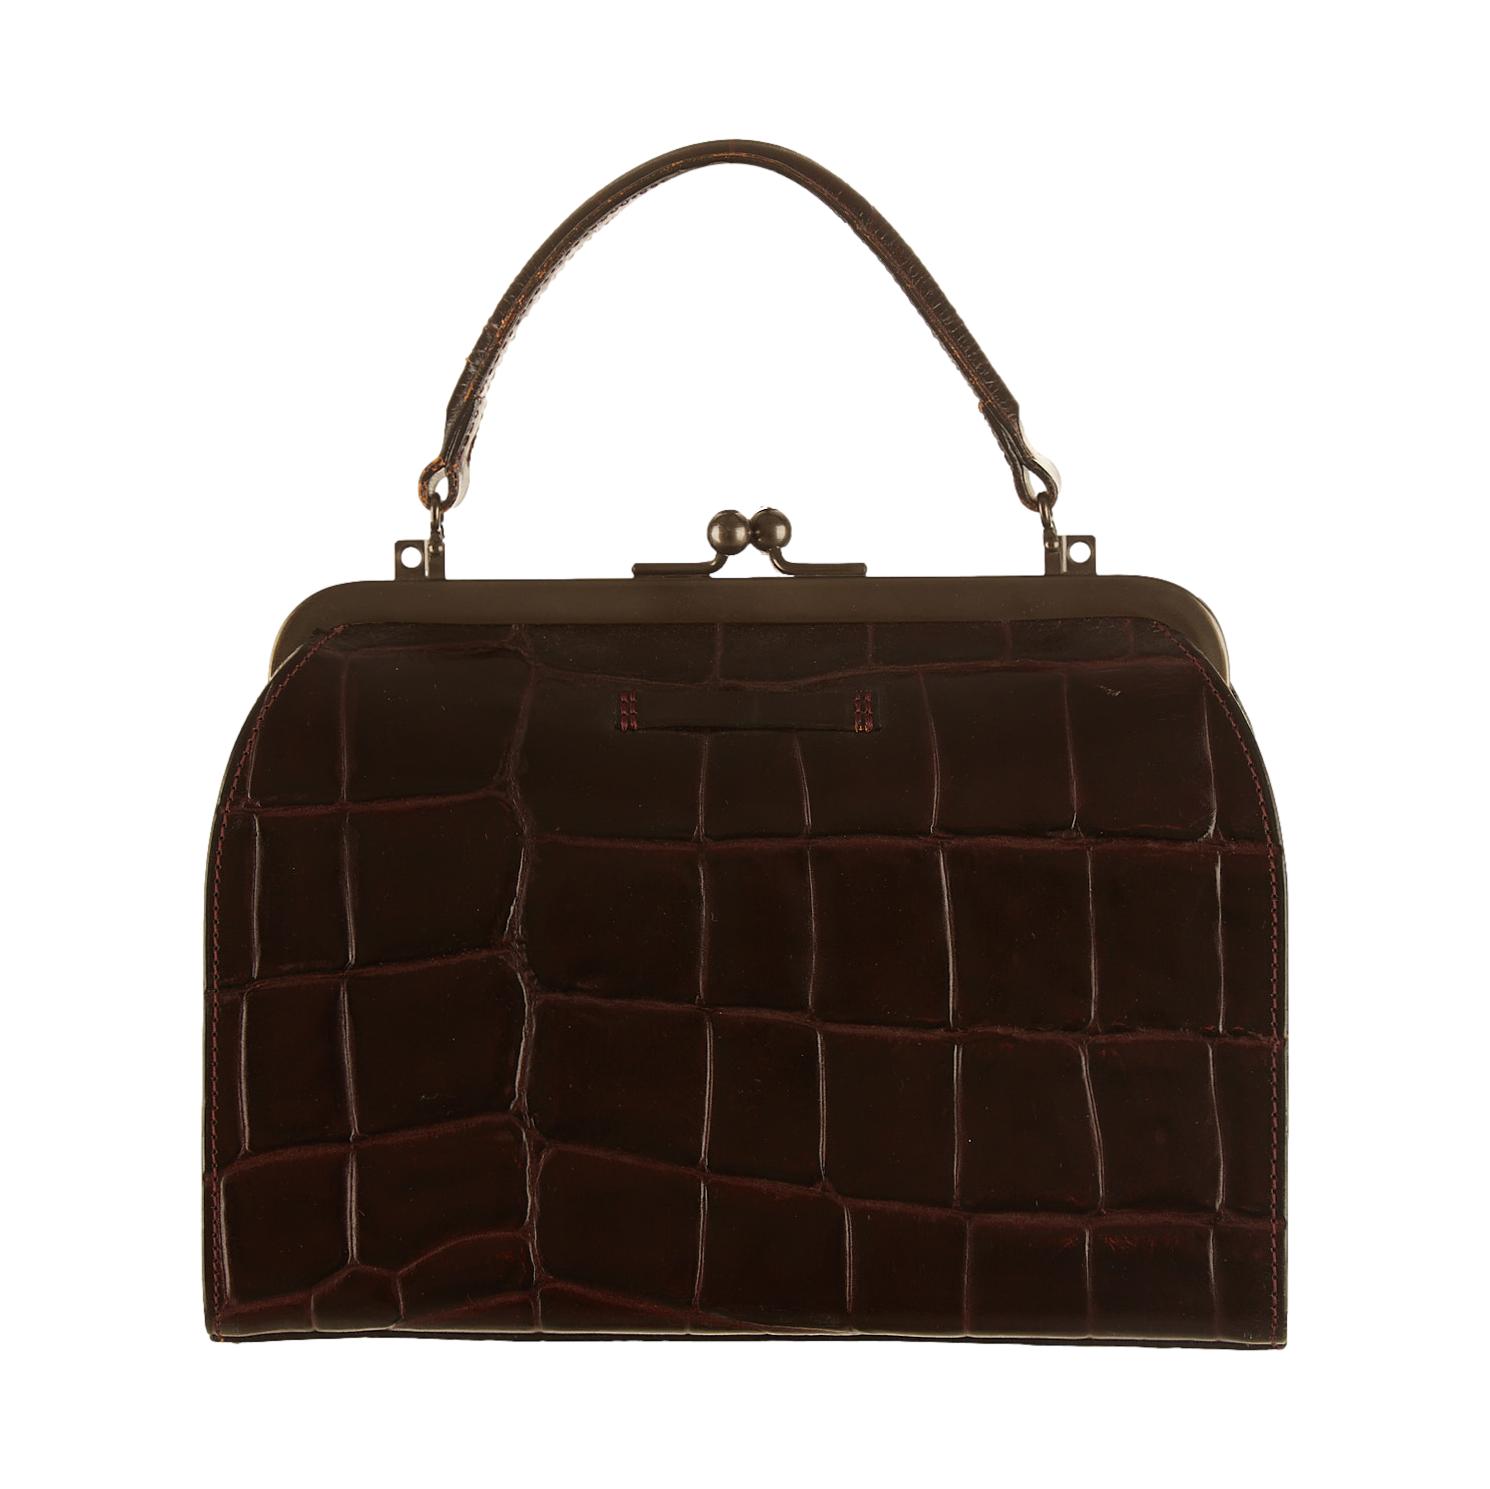 Fauré Le Page Authenticated Leather Clutch Bag